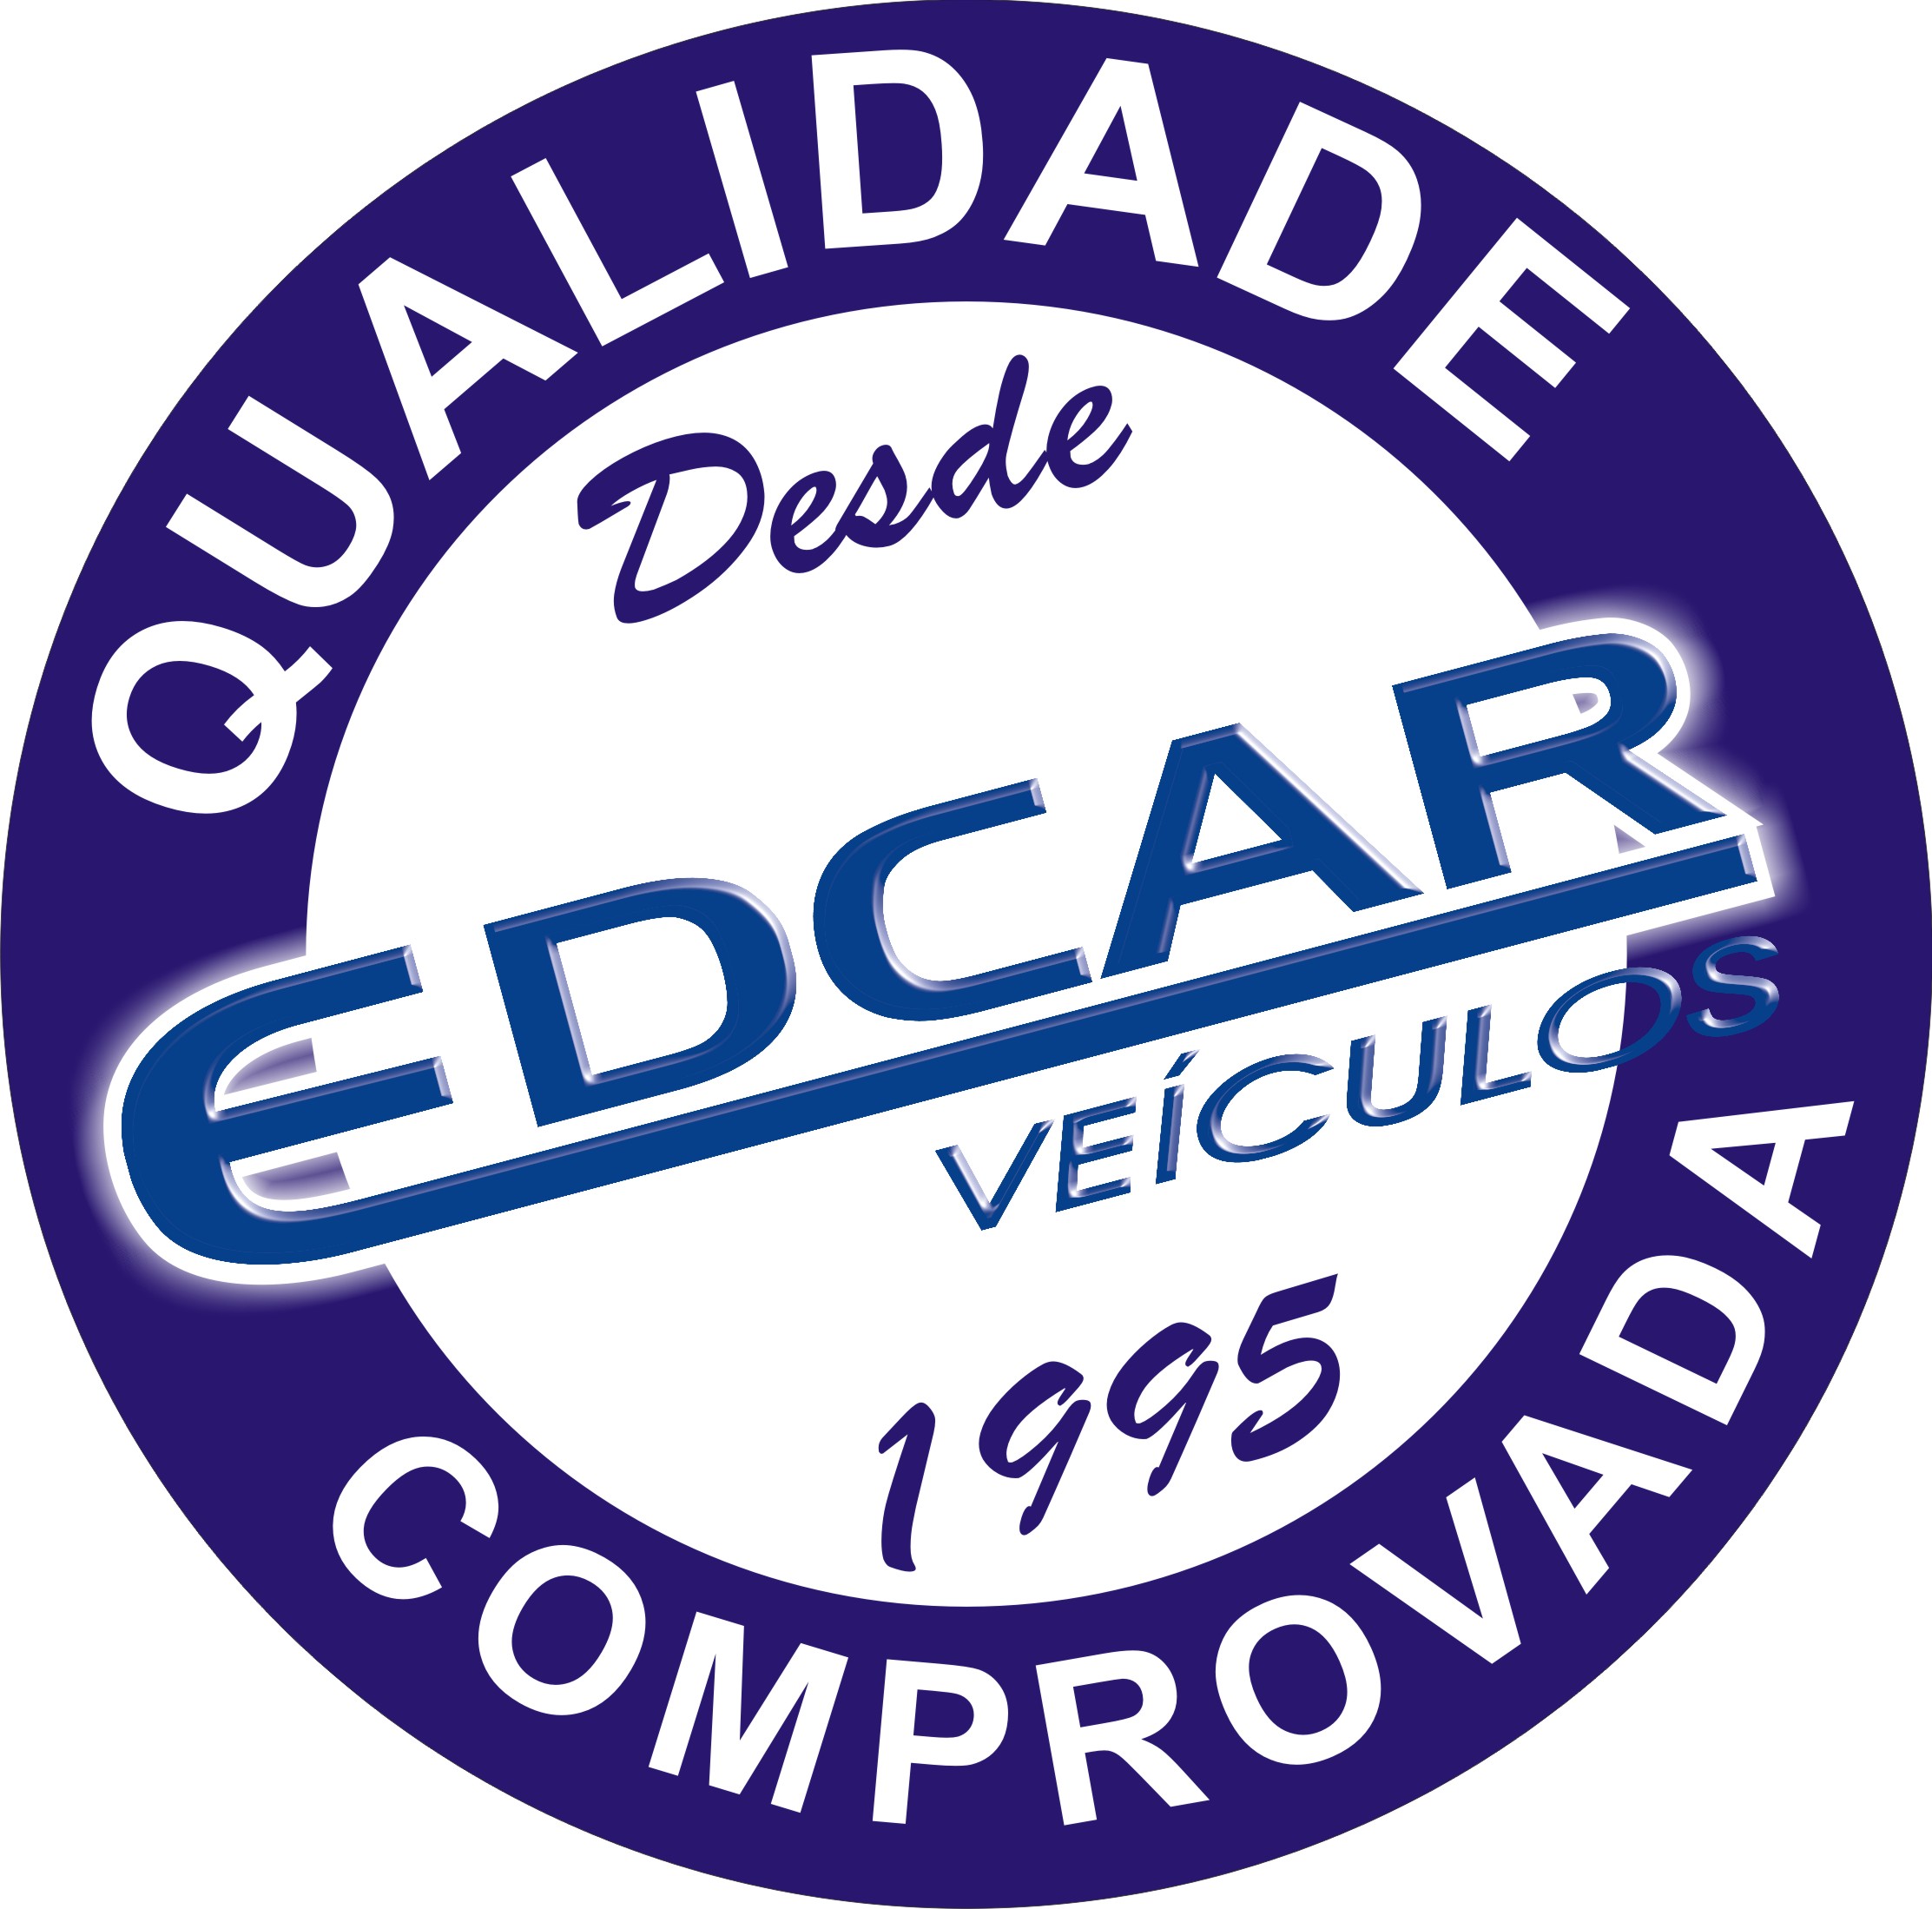 (c) Edcarveiculos.com.br